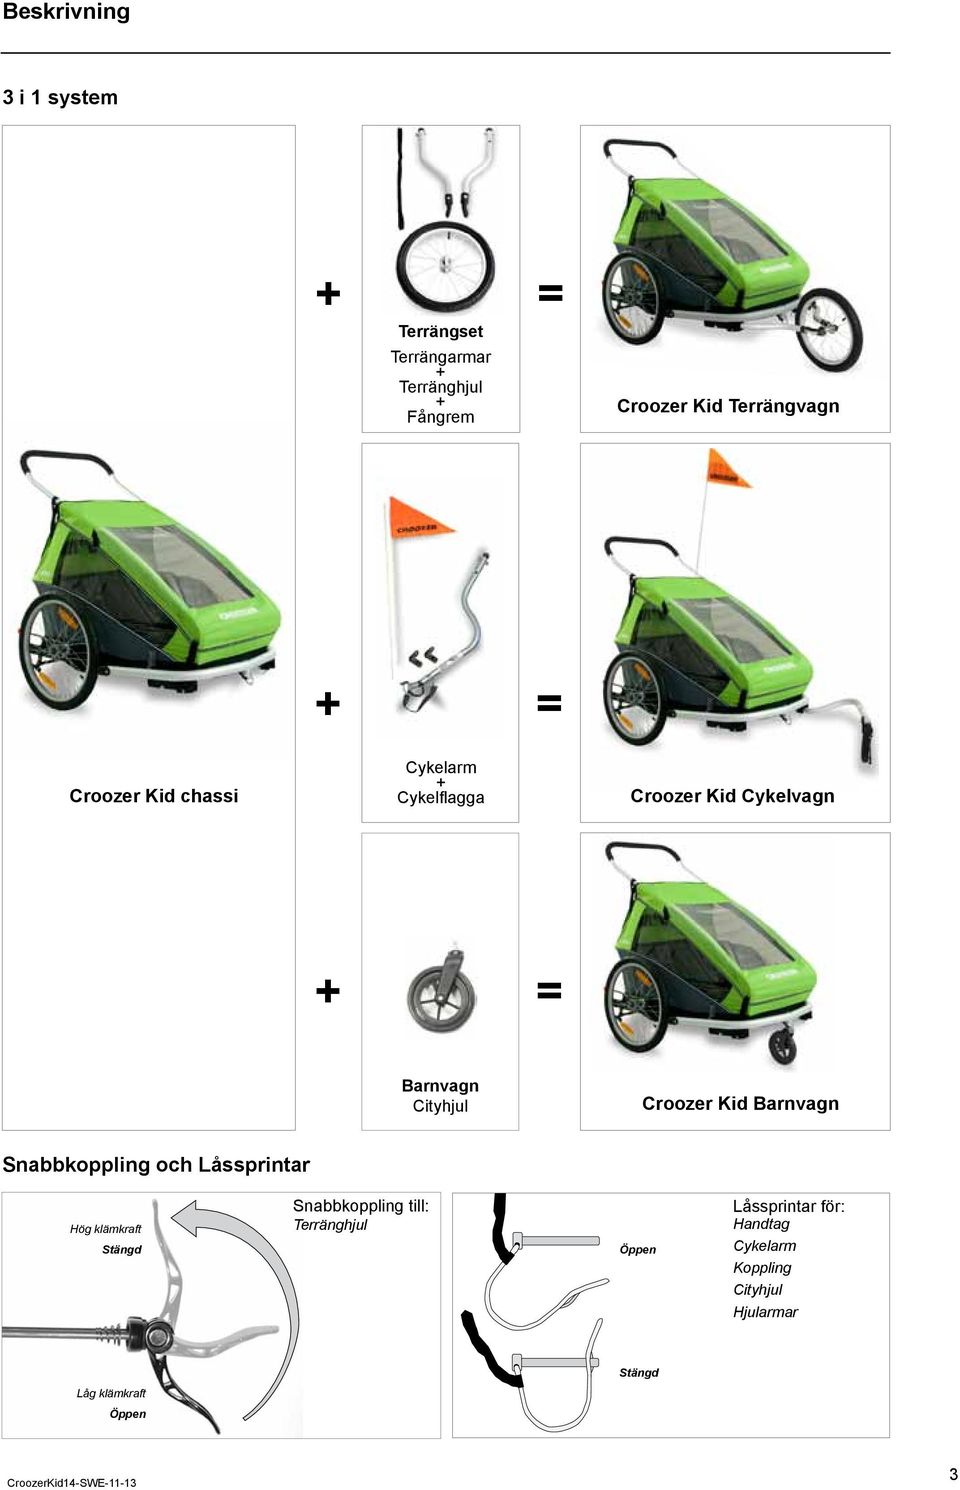 Cityhjul Croozer Kid Barnvagn Snabbkoppling och Låssprintar Hög klämkraft Stängd Snabbkoppling